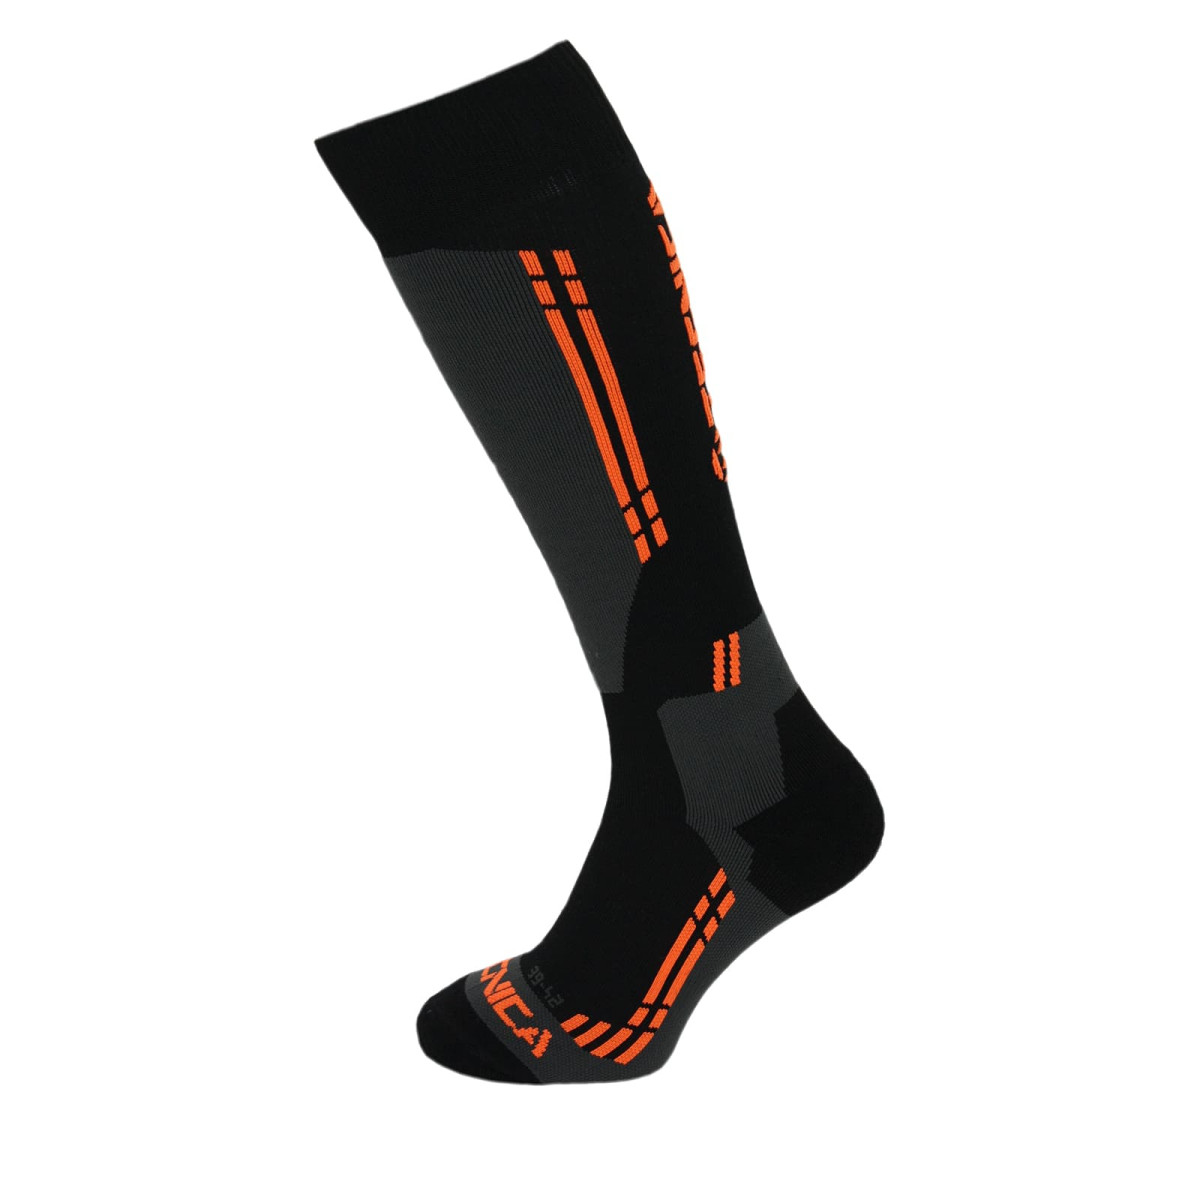 Tecnica Competition Ski Socks - černá/oranžová